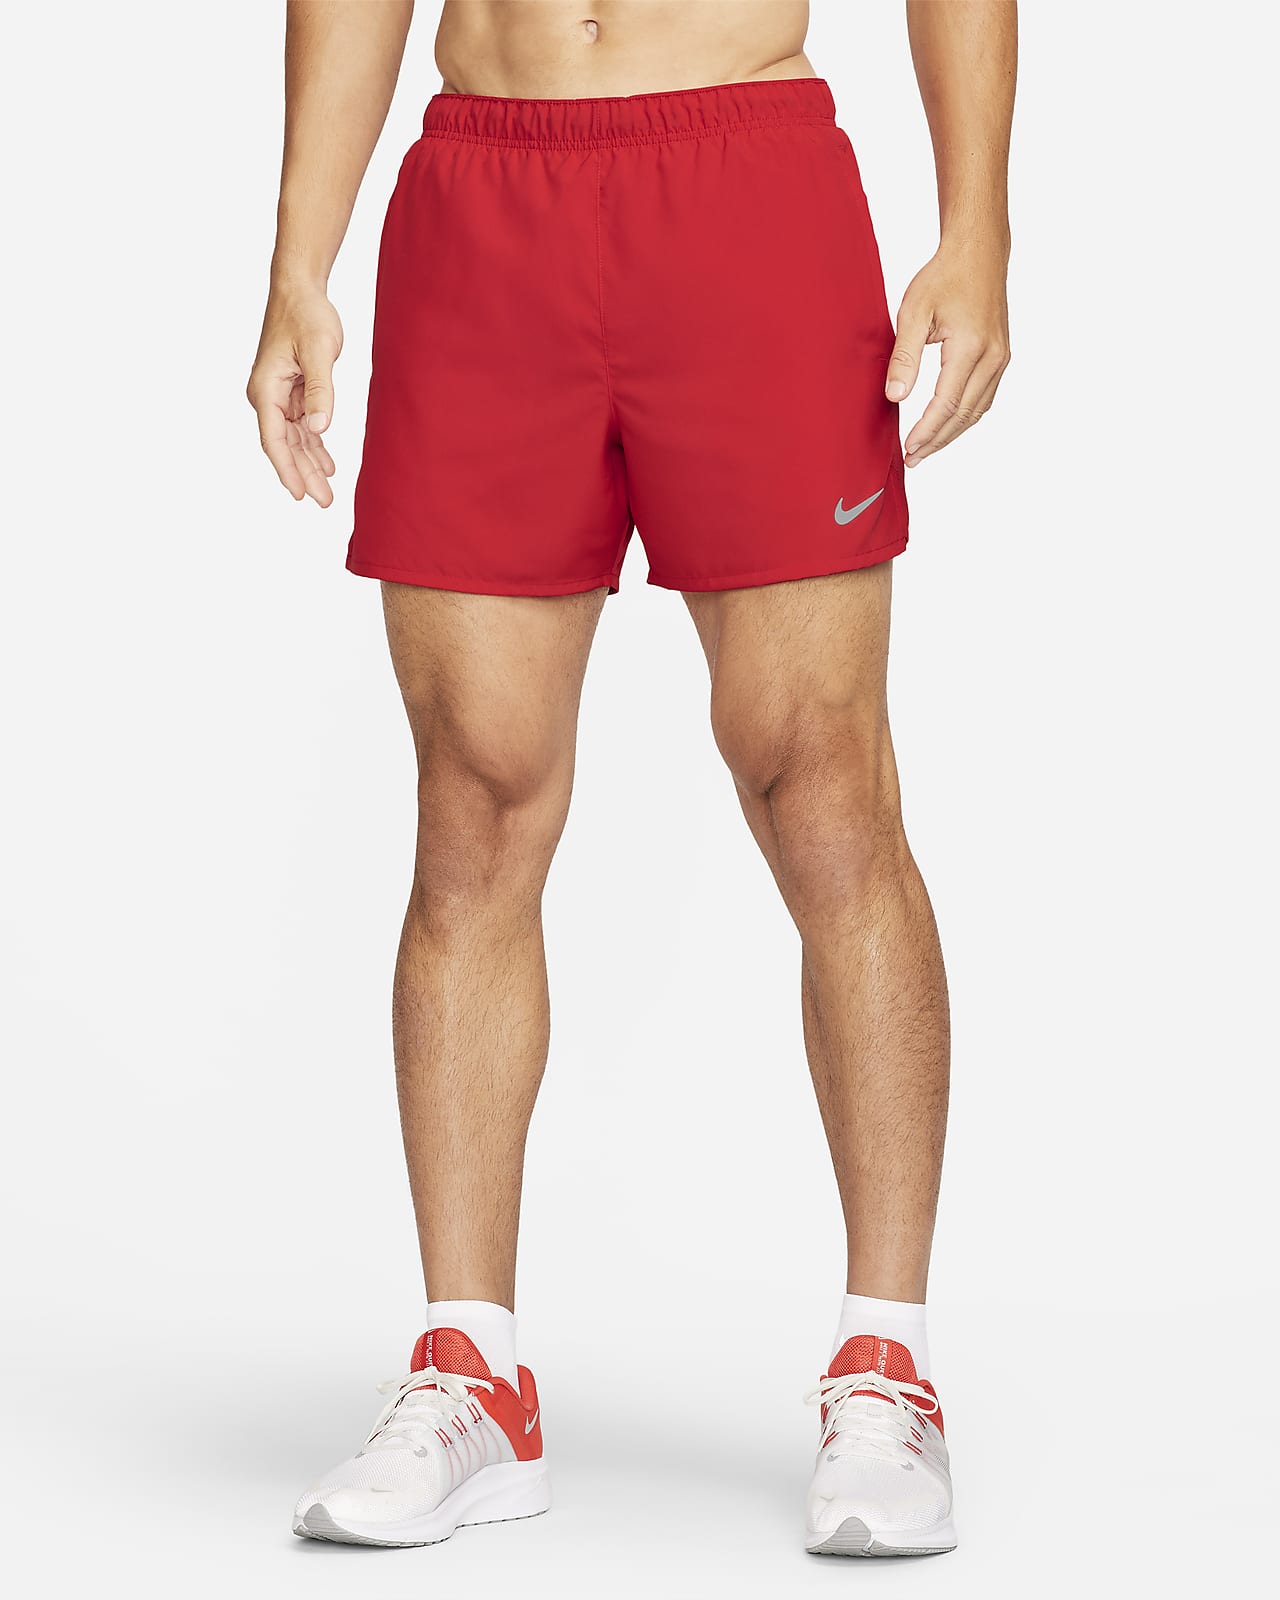 Calções de running forrados com slips de 13 cm Dri-FIT Nike Challenger para homem